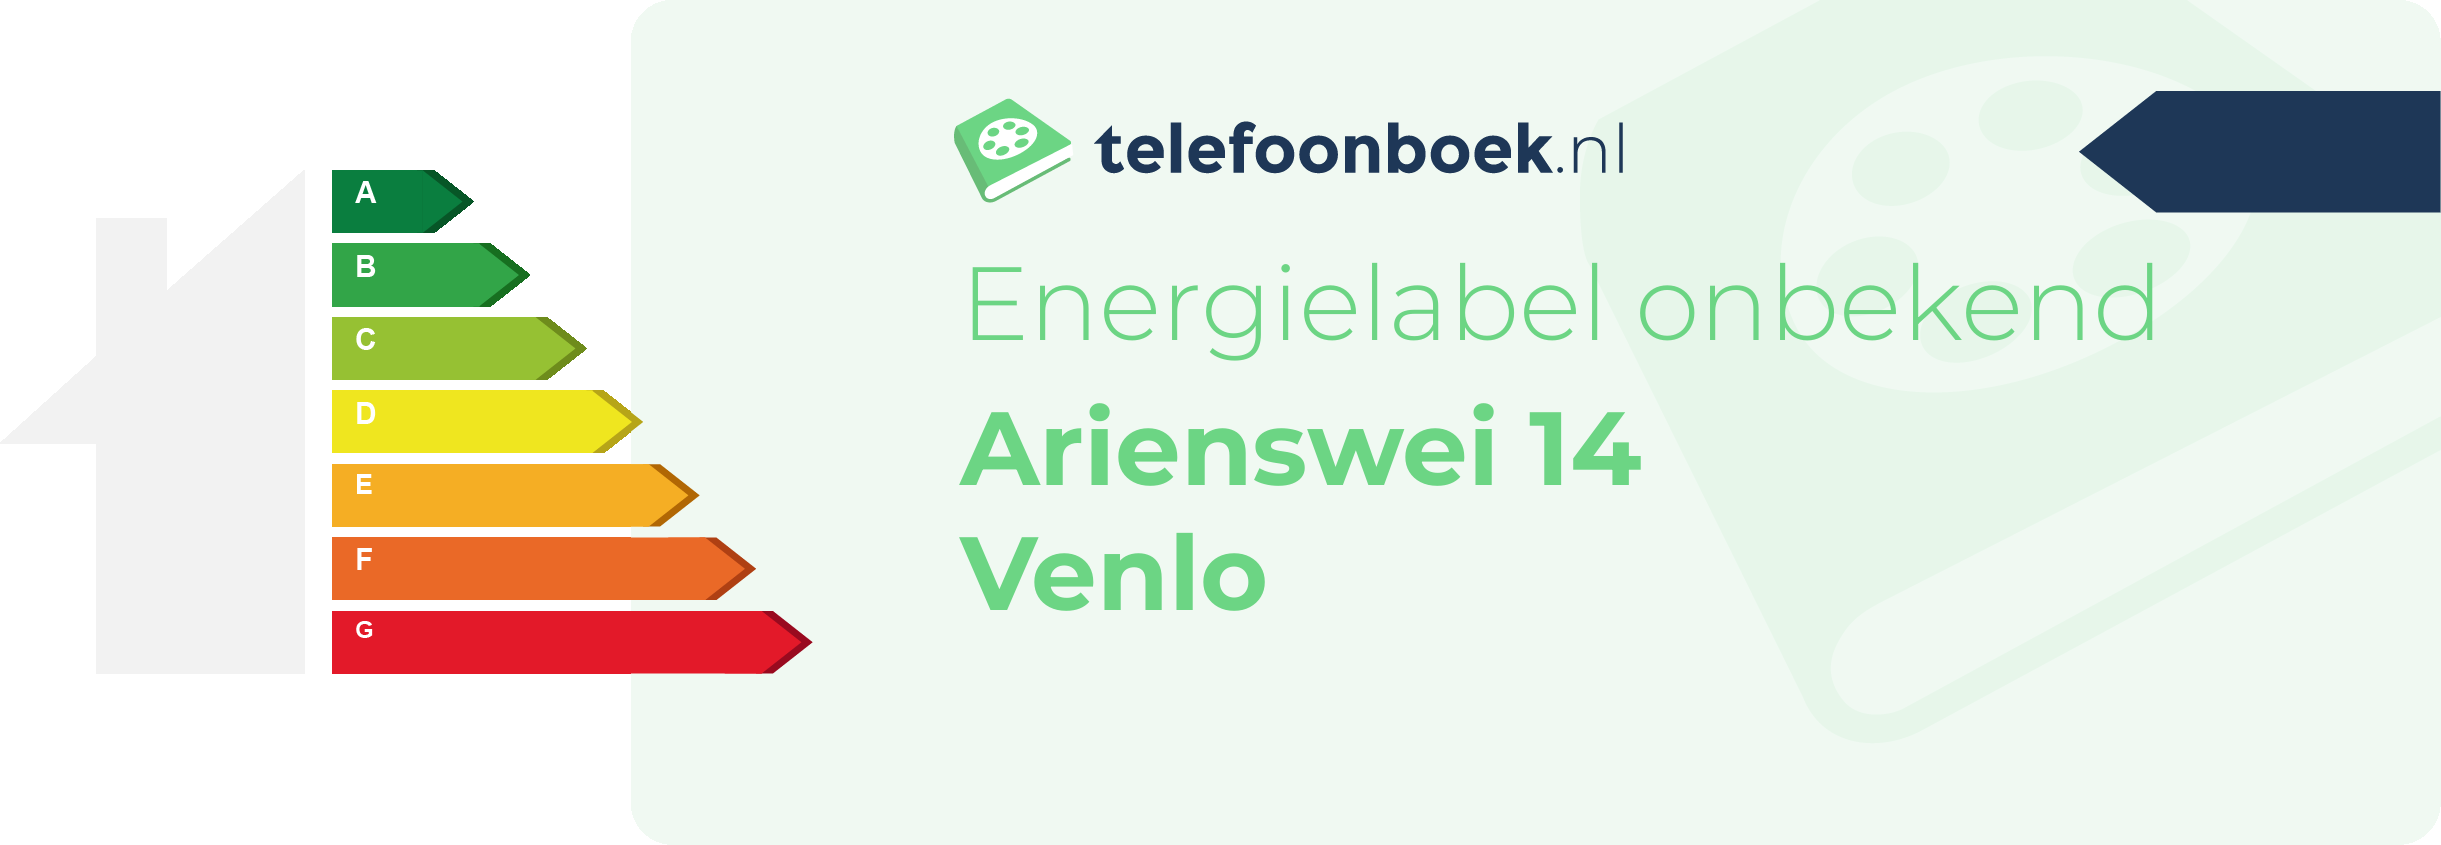 Energielabel Arienswei 14 Venlo